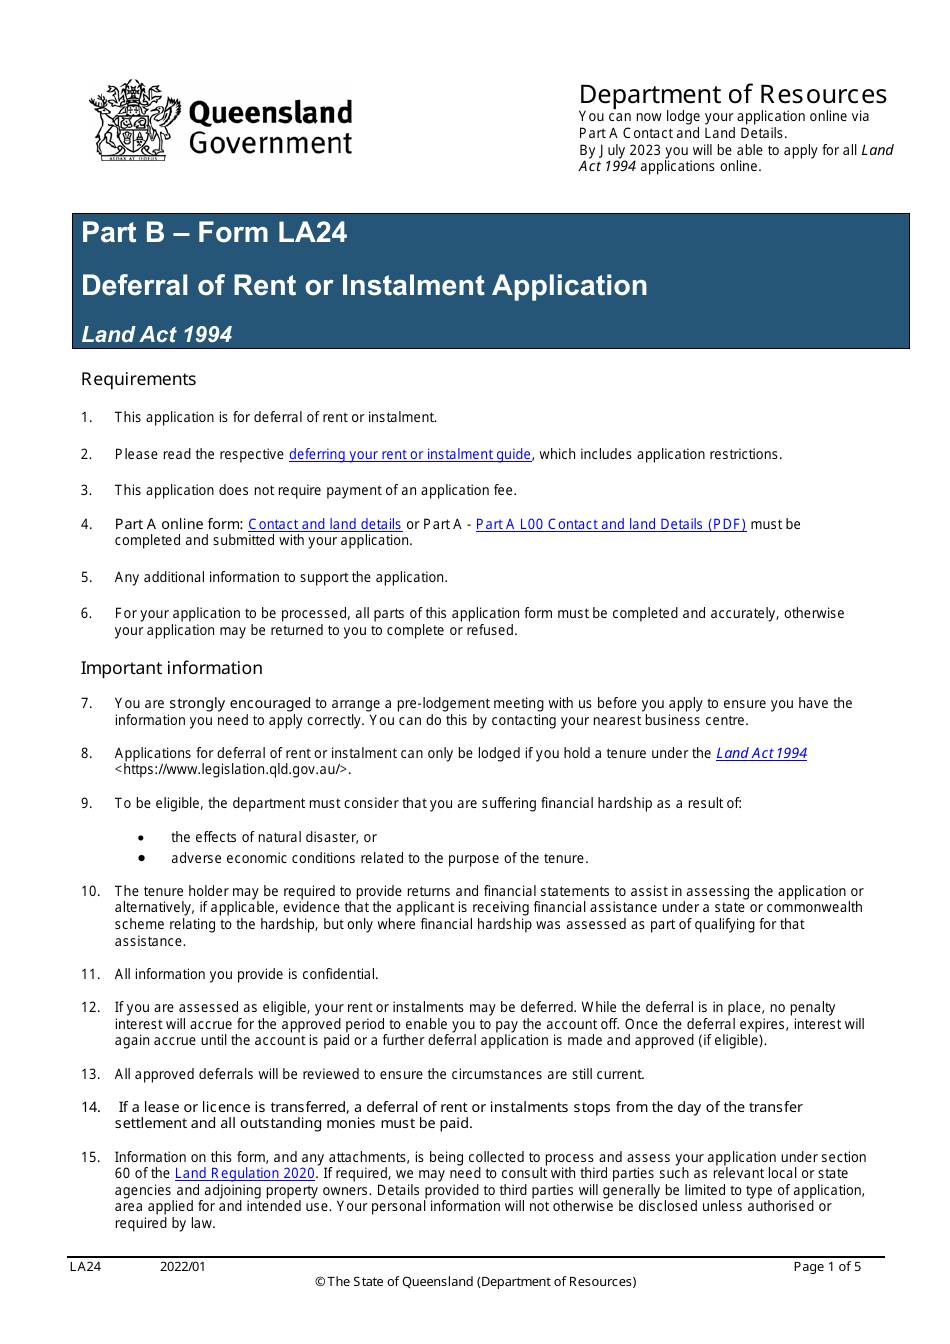 Form LA24 Part B Deferral of Rent or Instalment Application - Queensland, Australia, Page 1